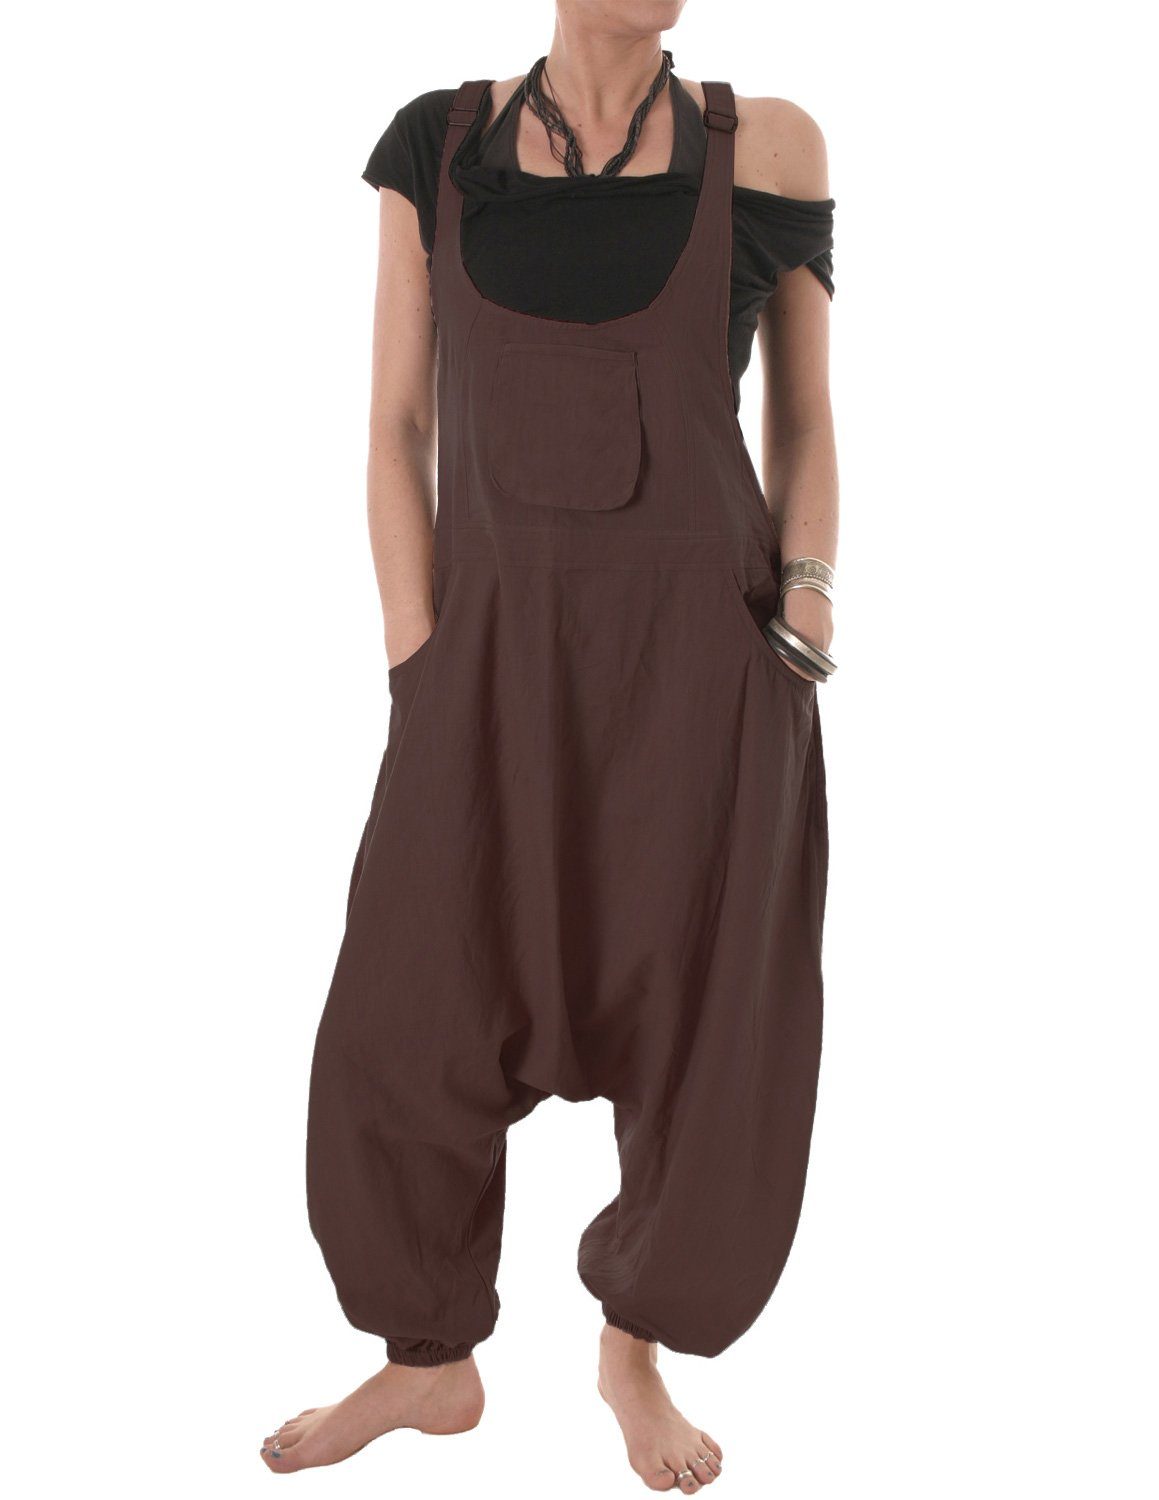 Vishes Latzhose Damen Sommer Hose Haremshose Overall Baumwolle bequem zu tragen, Hippie, Goa, einfarbig braun